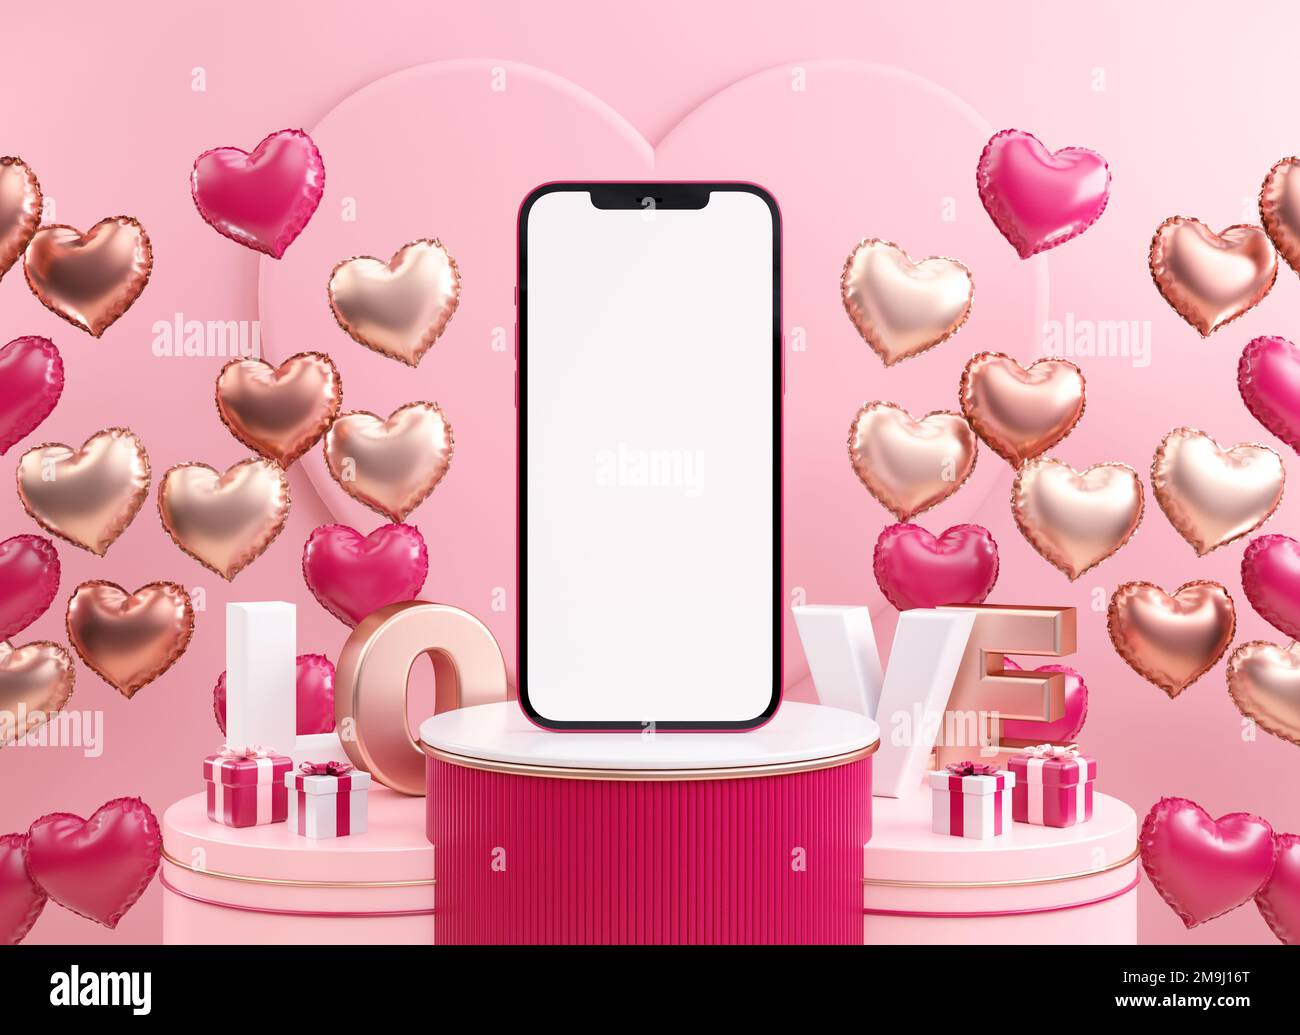 San Valentino telefono cellulare schermo vuoto mockup con palloncini di cuore su uno sfondo rosa in 3D rendering Foto Stock